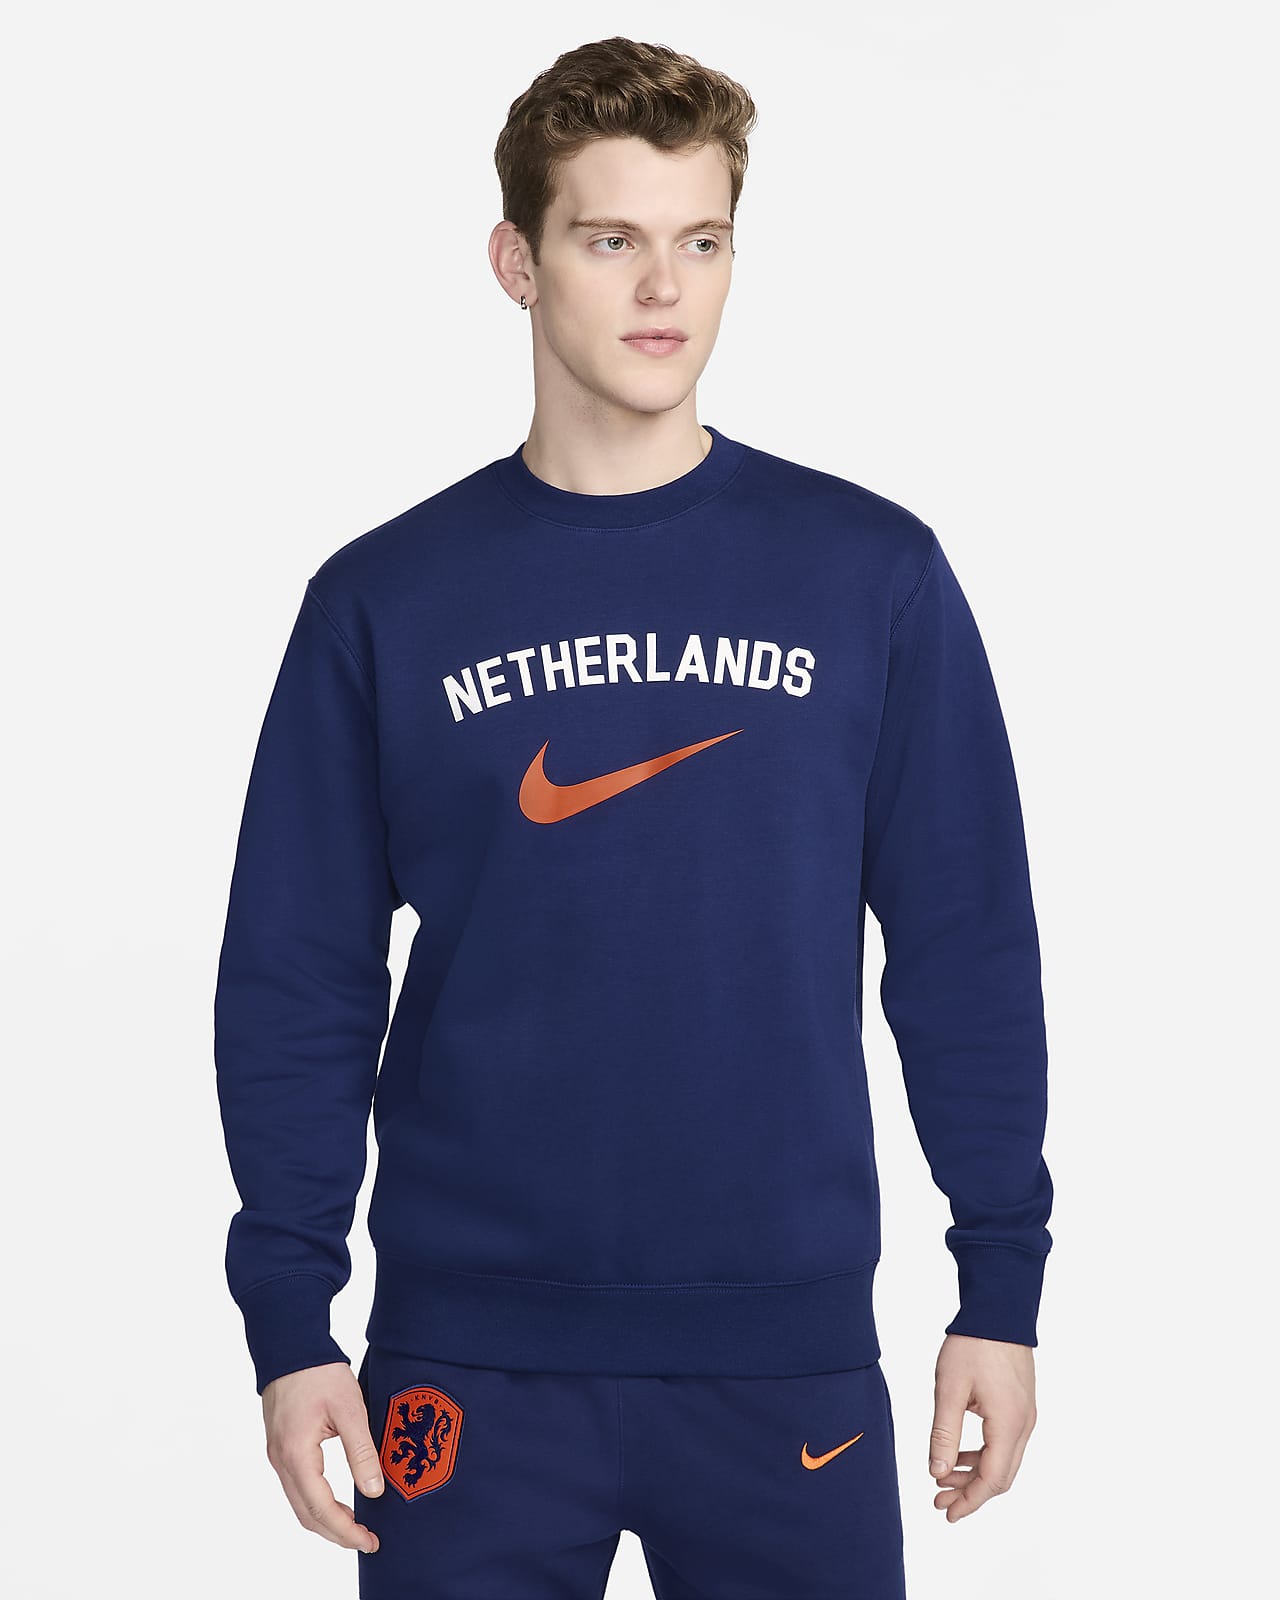 Hollanda Club Fleece Nike Sıfır Yakalı Erkek Futbol Sweatshirt'ü